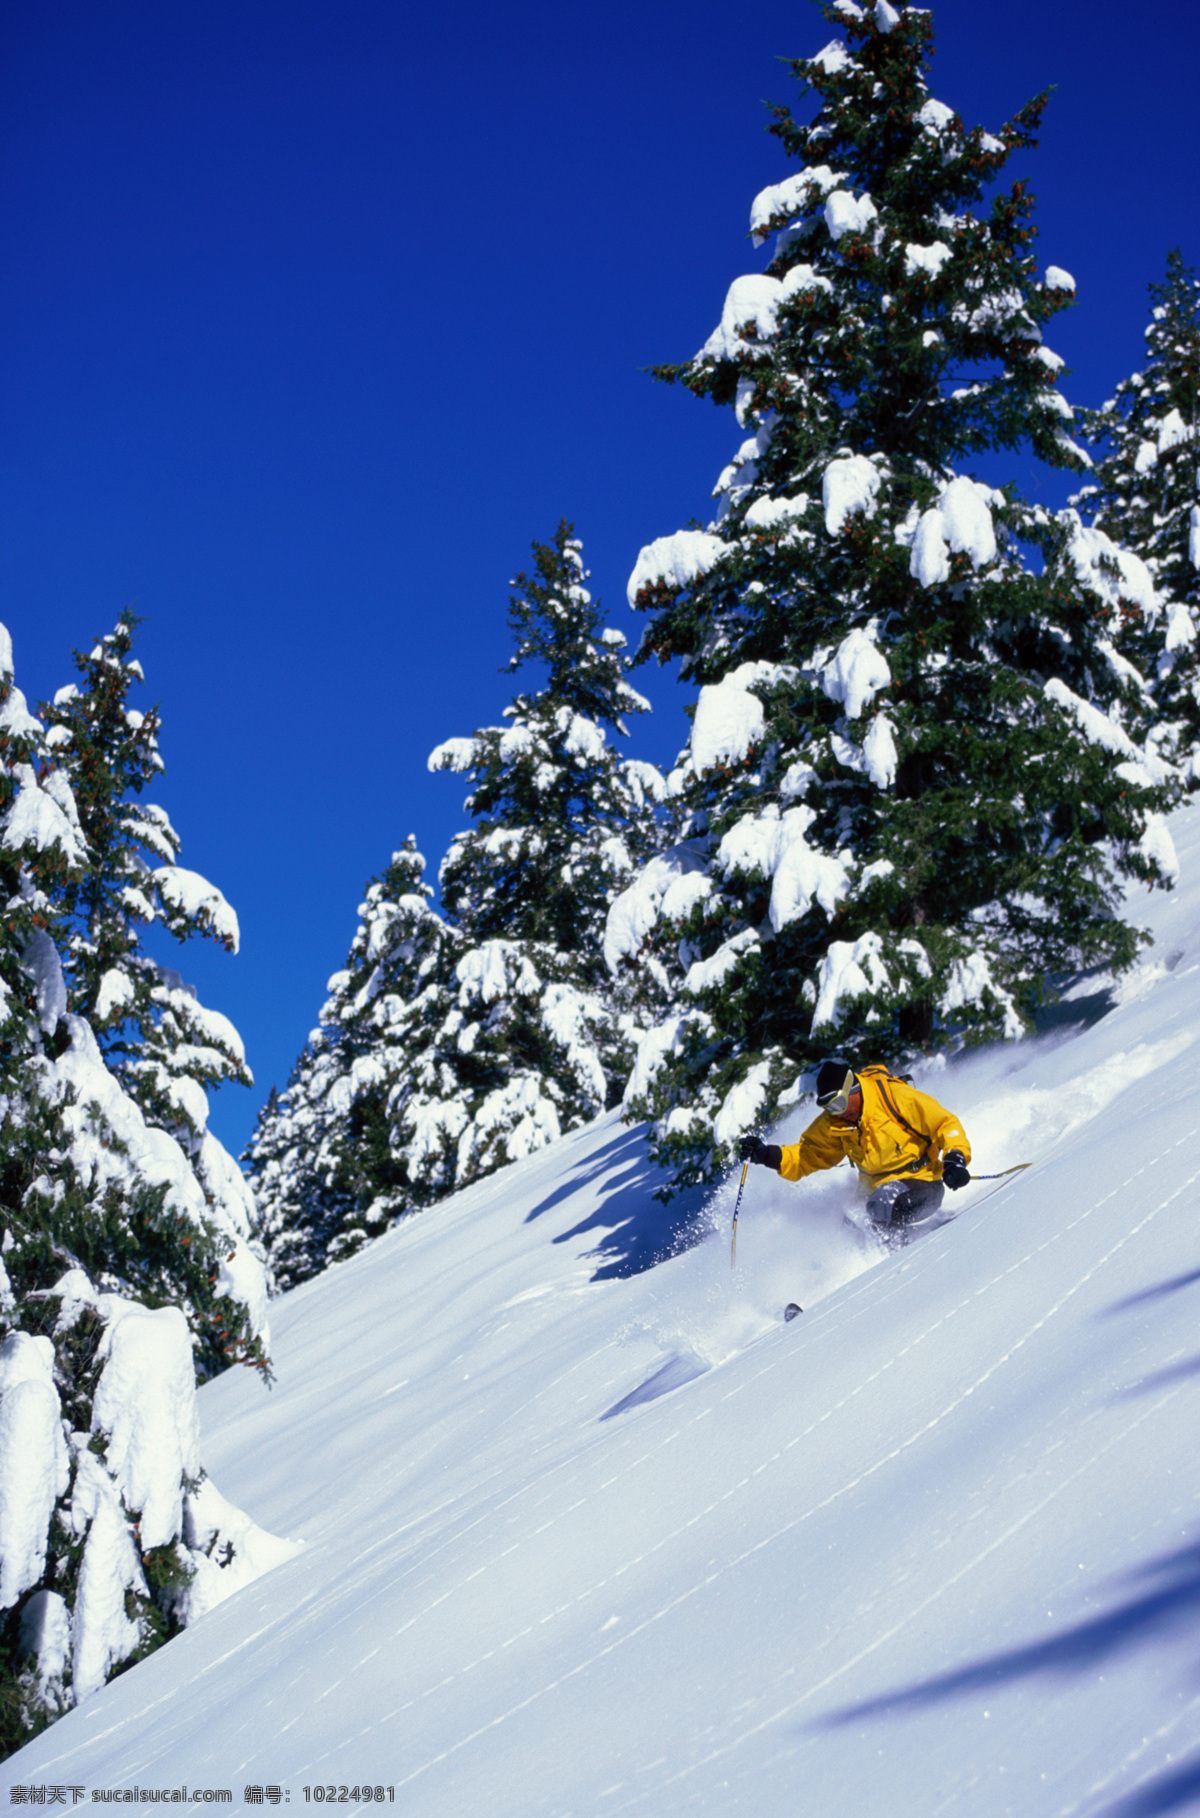 冬天 滑雪板 速度 滑雪的人 冬季 比赛 滑雪比赛 力量 速度感 雪 滑雪撬 羽绒服 运动感 运动素材 体育 冬季比赛 文化艺术 体育运动